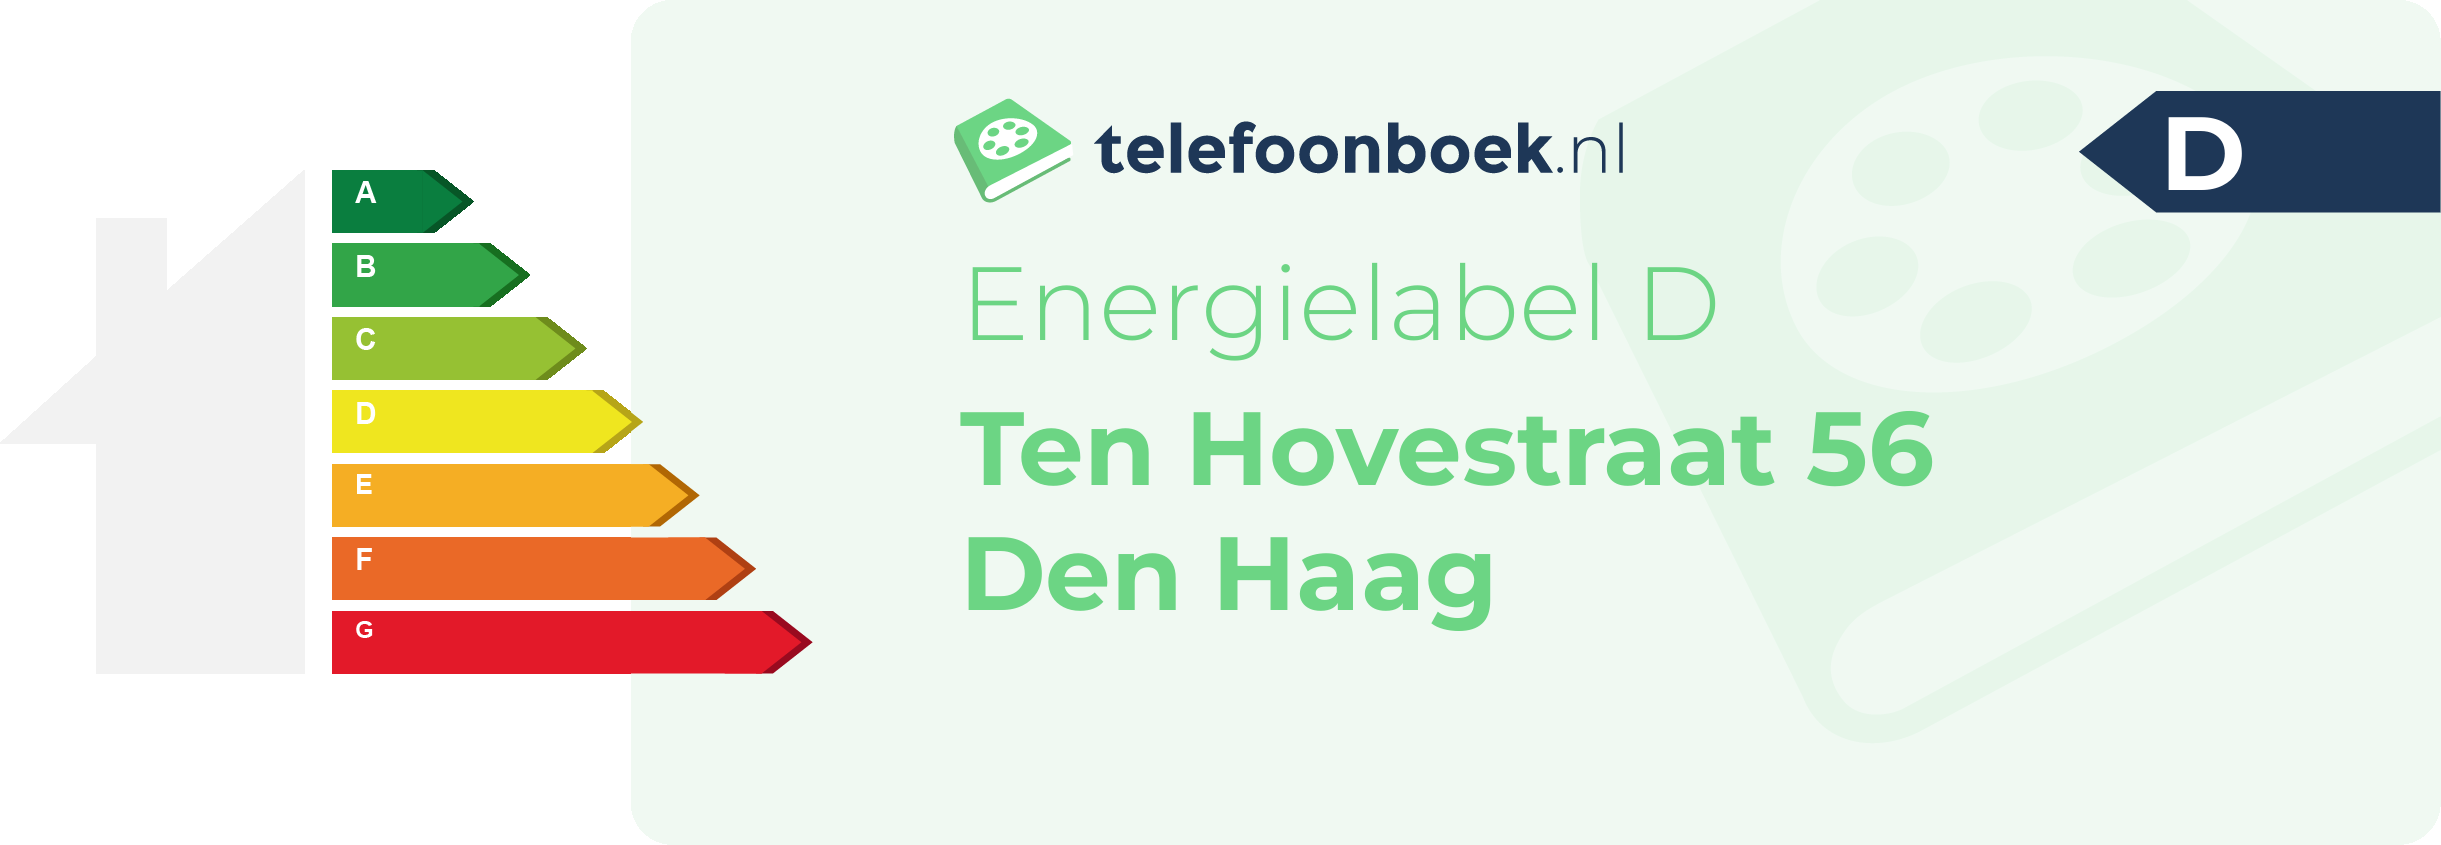 Energielabel Ten Hovestraat 56 Den Haag